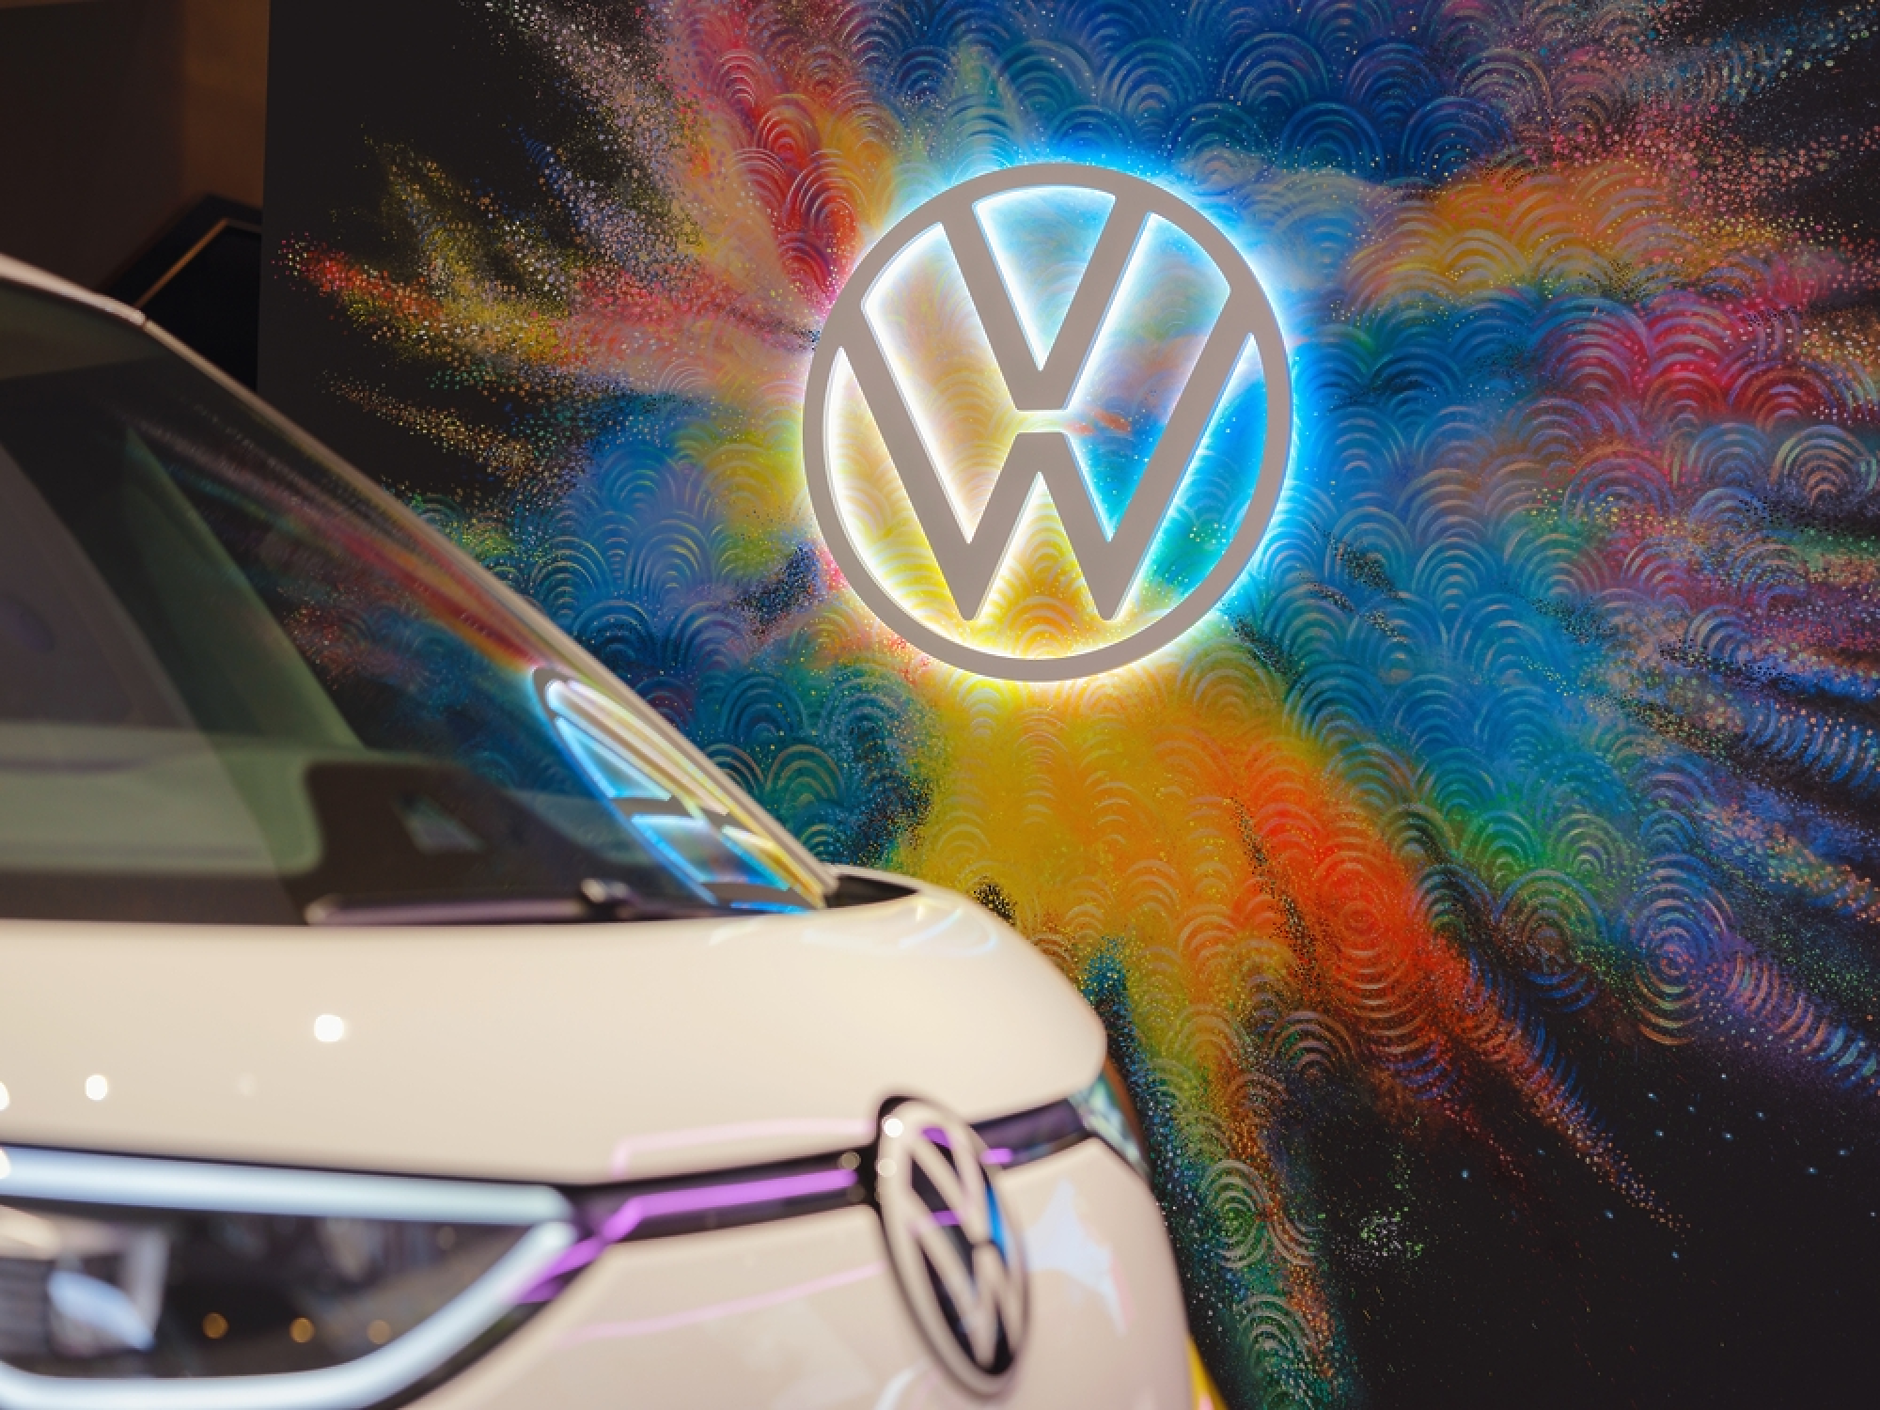 Volkswagen влага 2,5 млрд. евро в разширяване на иновационния си център в Китай